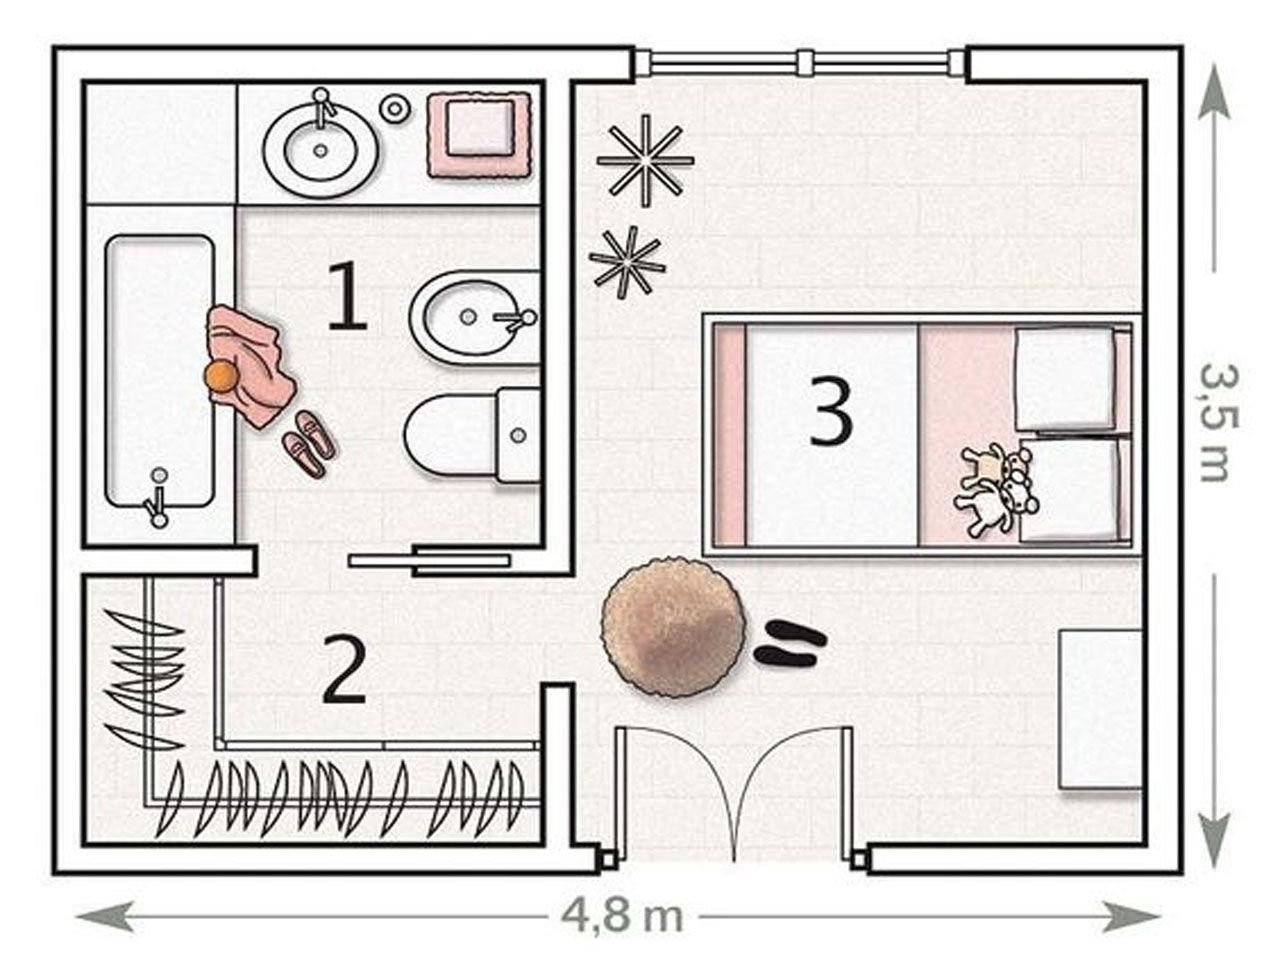 Функциональная планировка своего дома. Планировка комнаты чертеж. Схематичный план комнаты. Планировка спальни с гардеробом и санузлом. Схема квартиры.